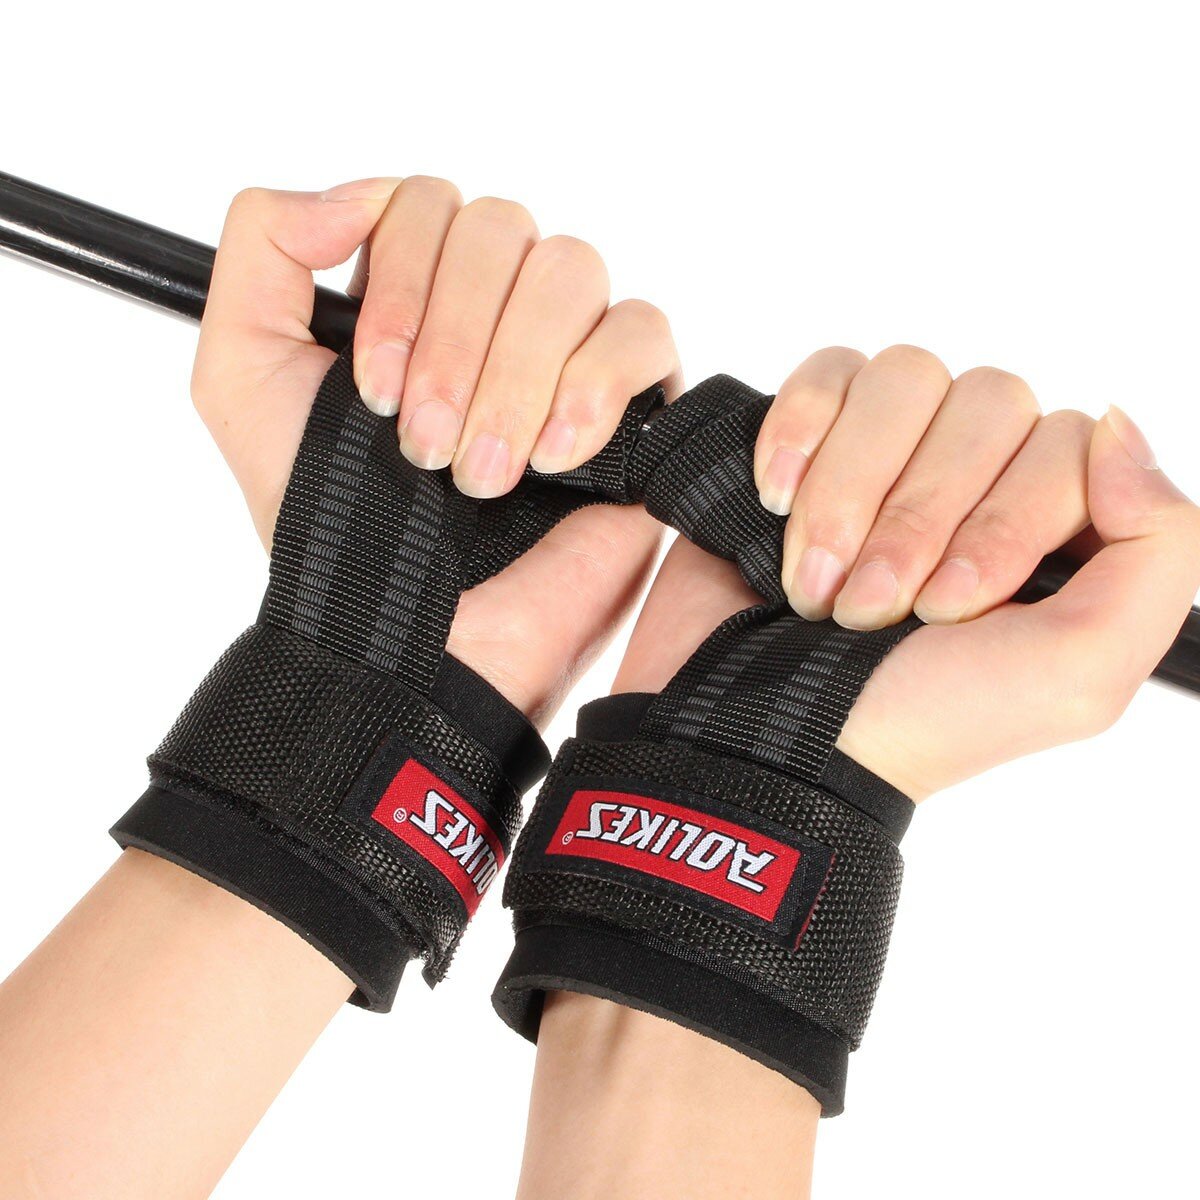 Ремни для поднятия тяжестей с захватами для рук и защитой запястий для тренировок в зале LJ